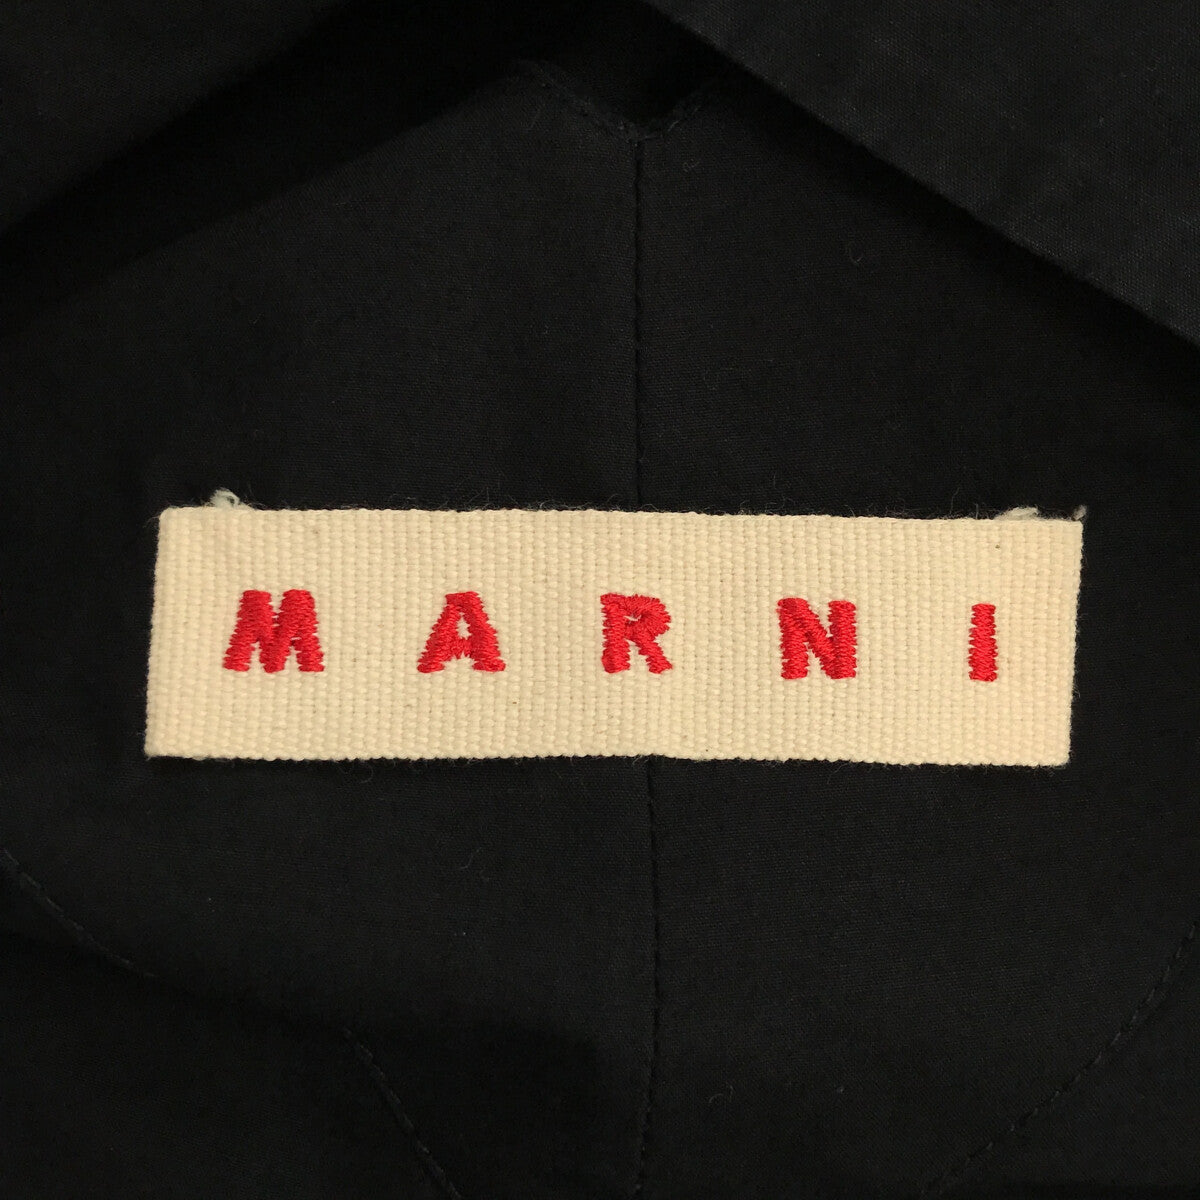 MARNI / マルニ | Vネック ウエストデザインブラウス | 40 | ブラック | レディース